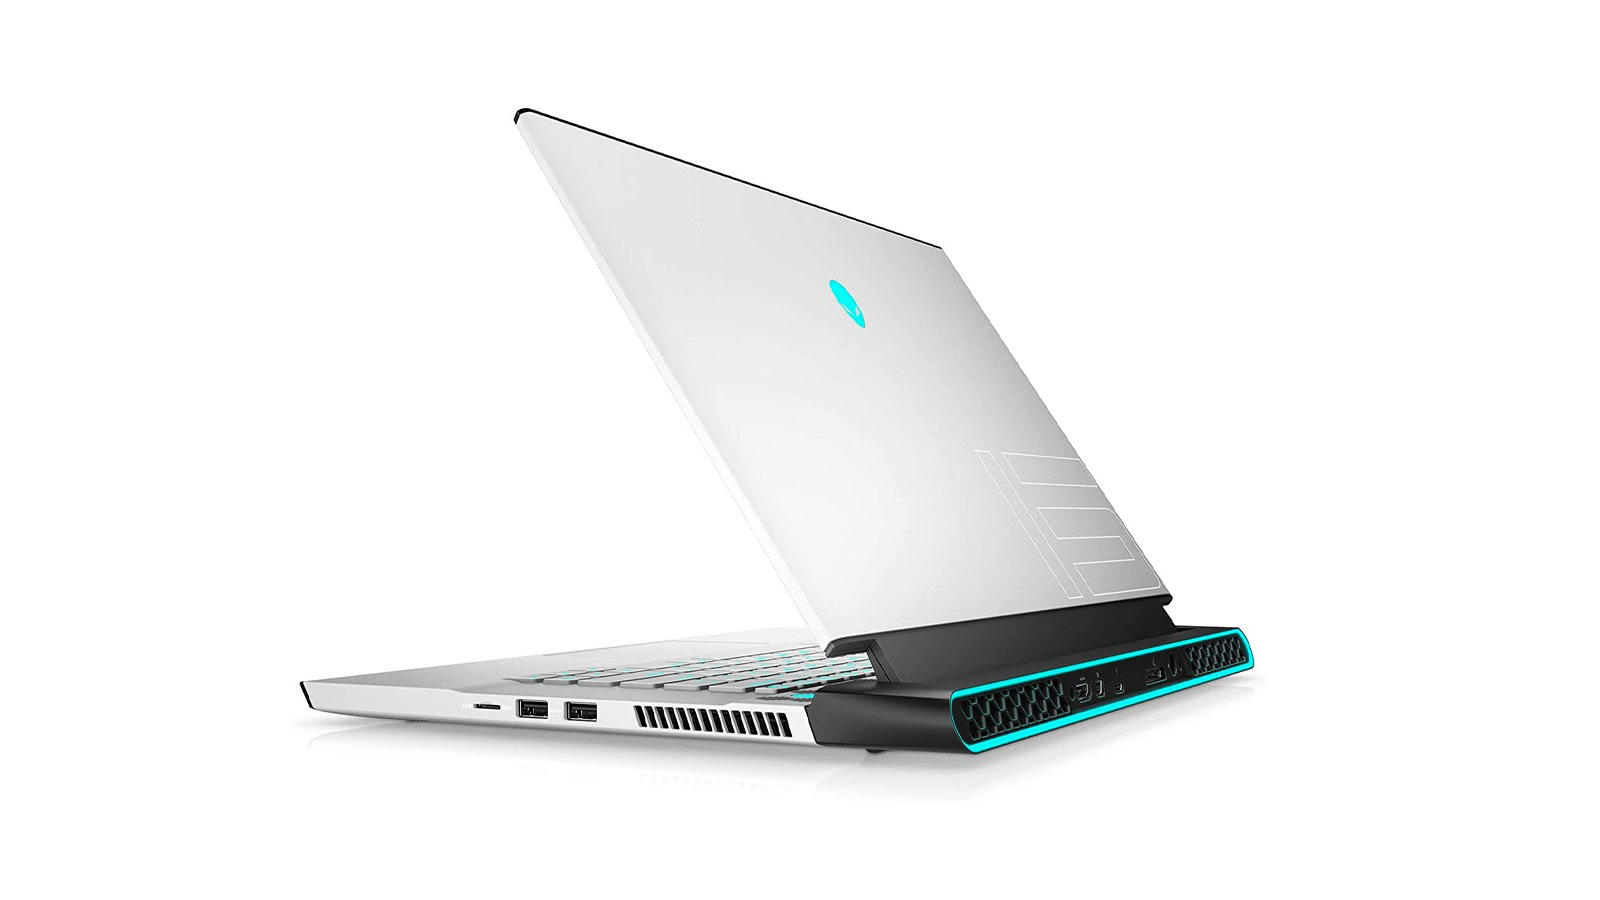 Alienware M15 R4 RTX 3070 laptop